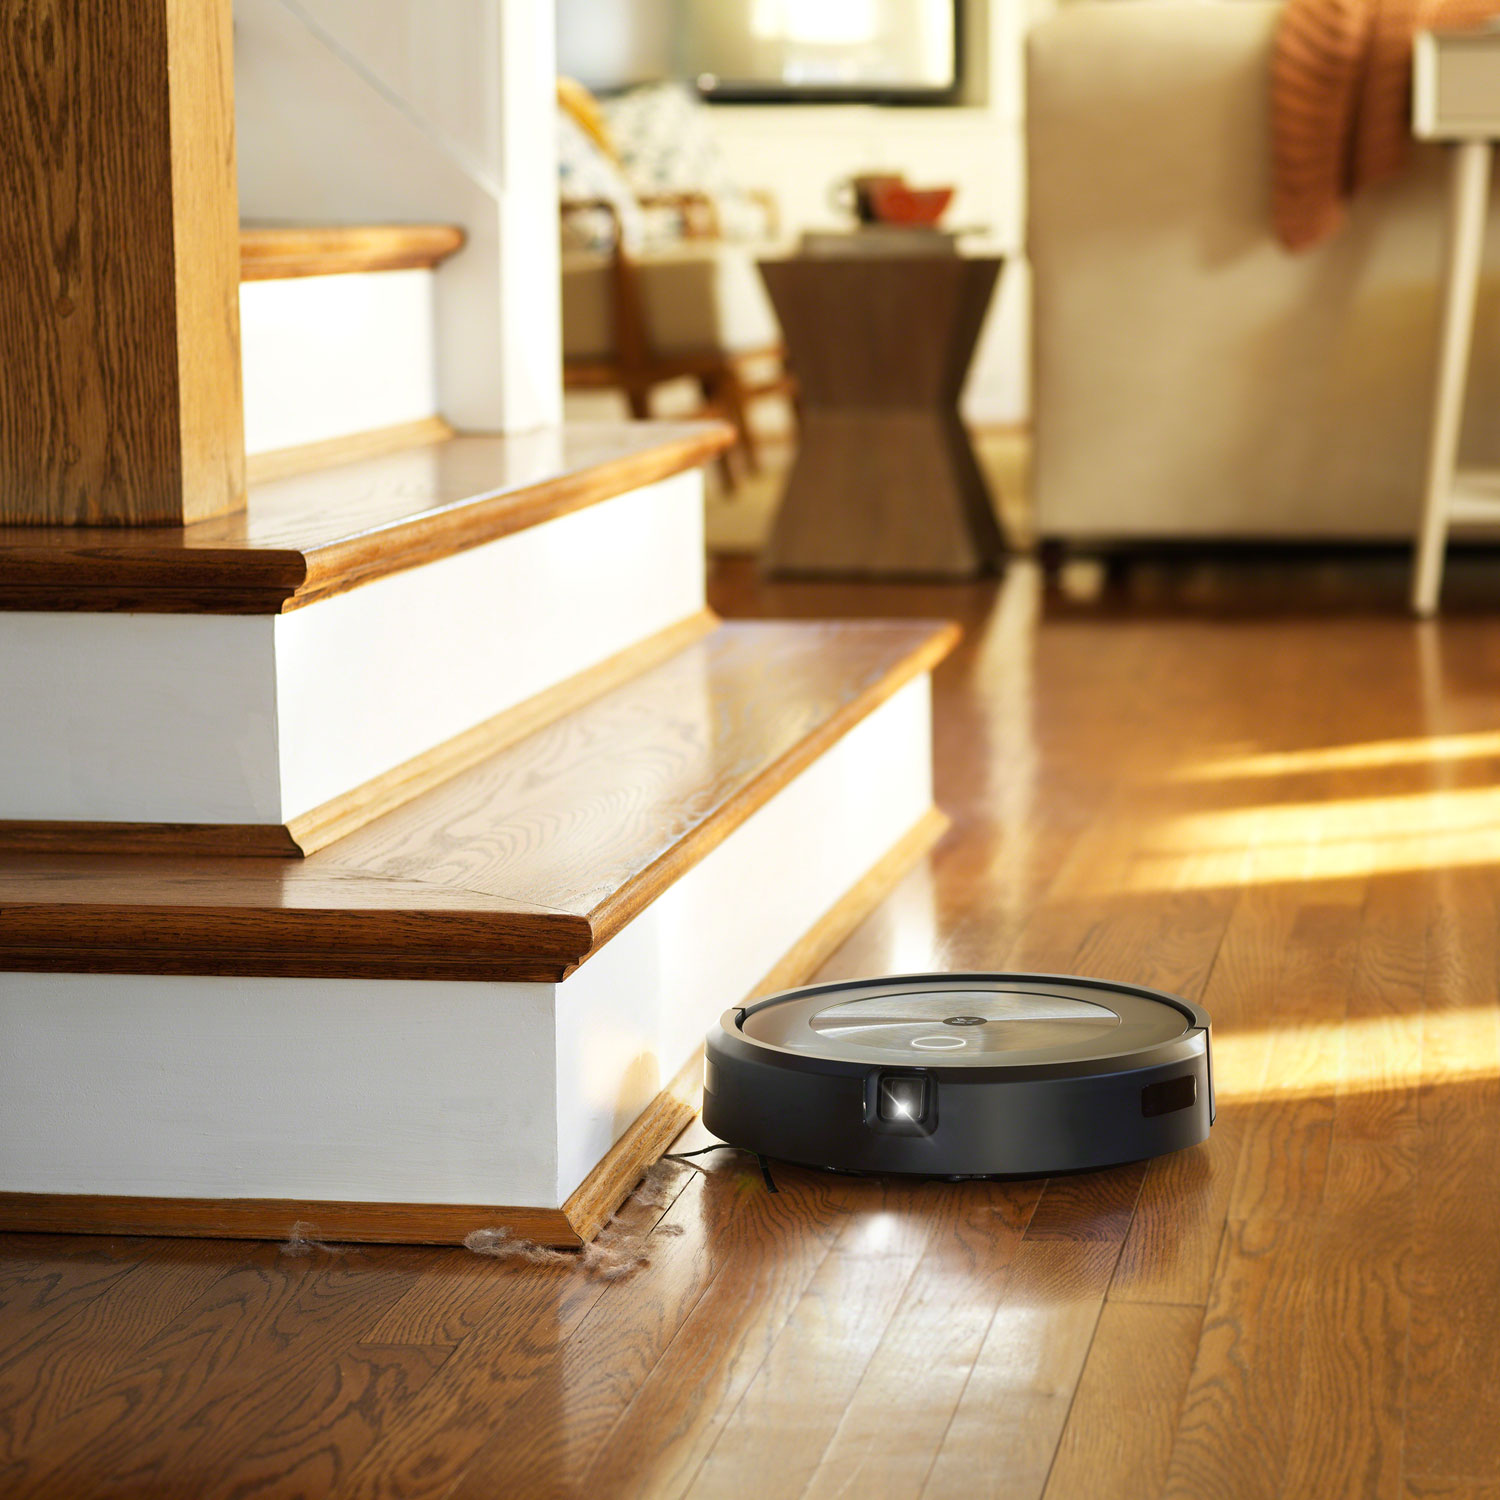 iRobot Roomba j7+ on hardwood floor